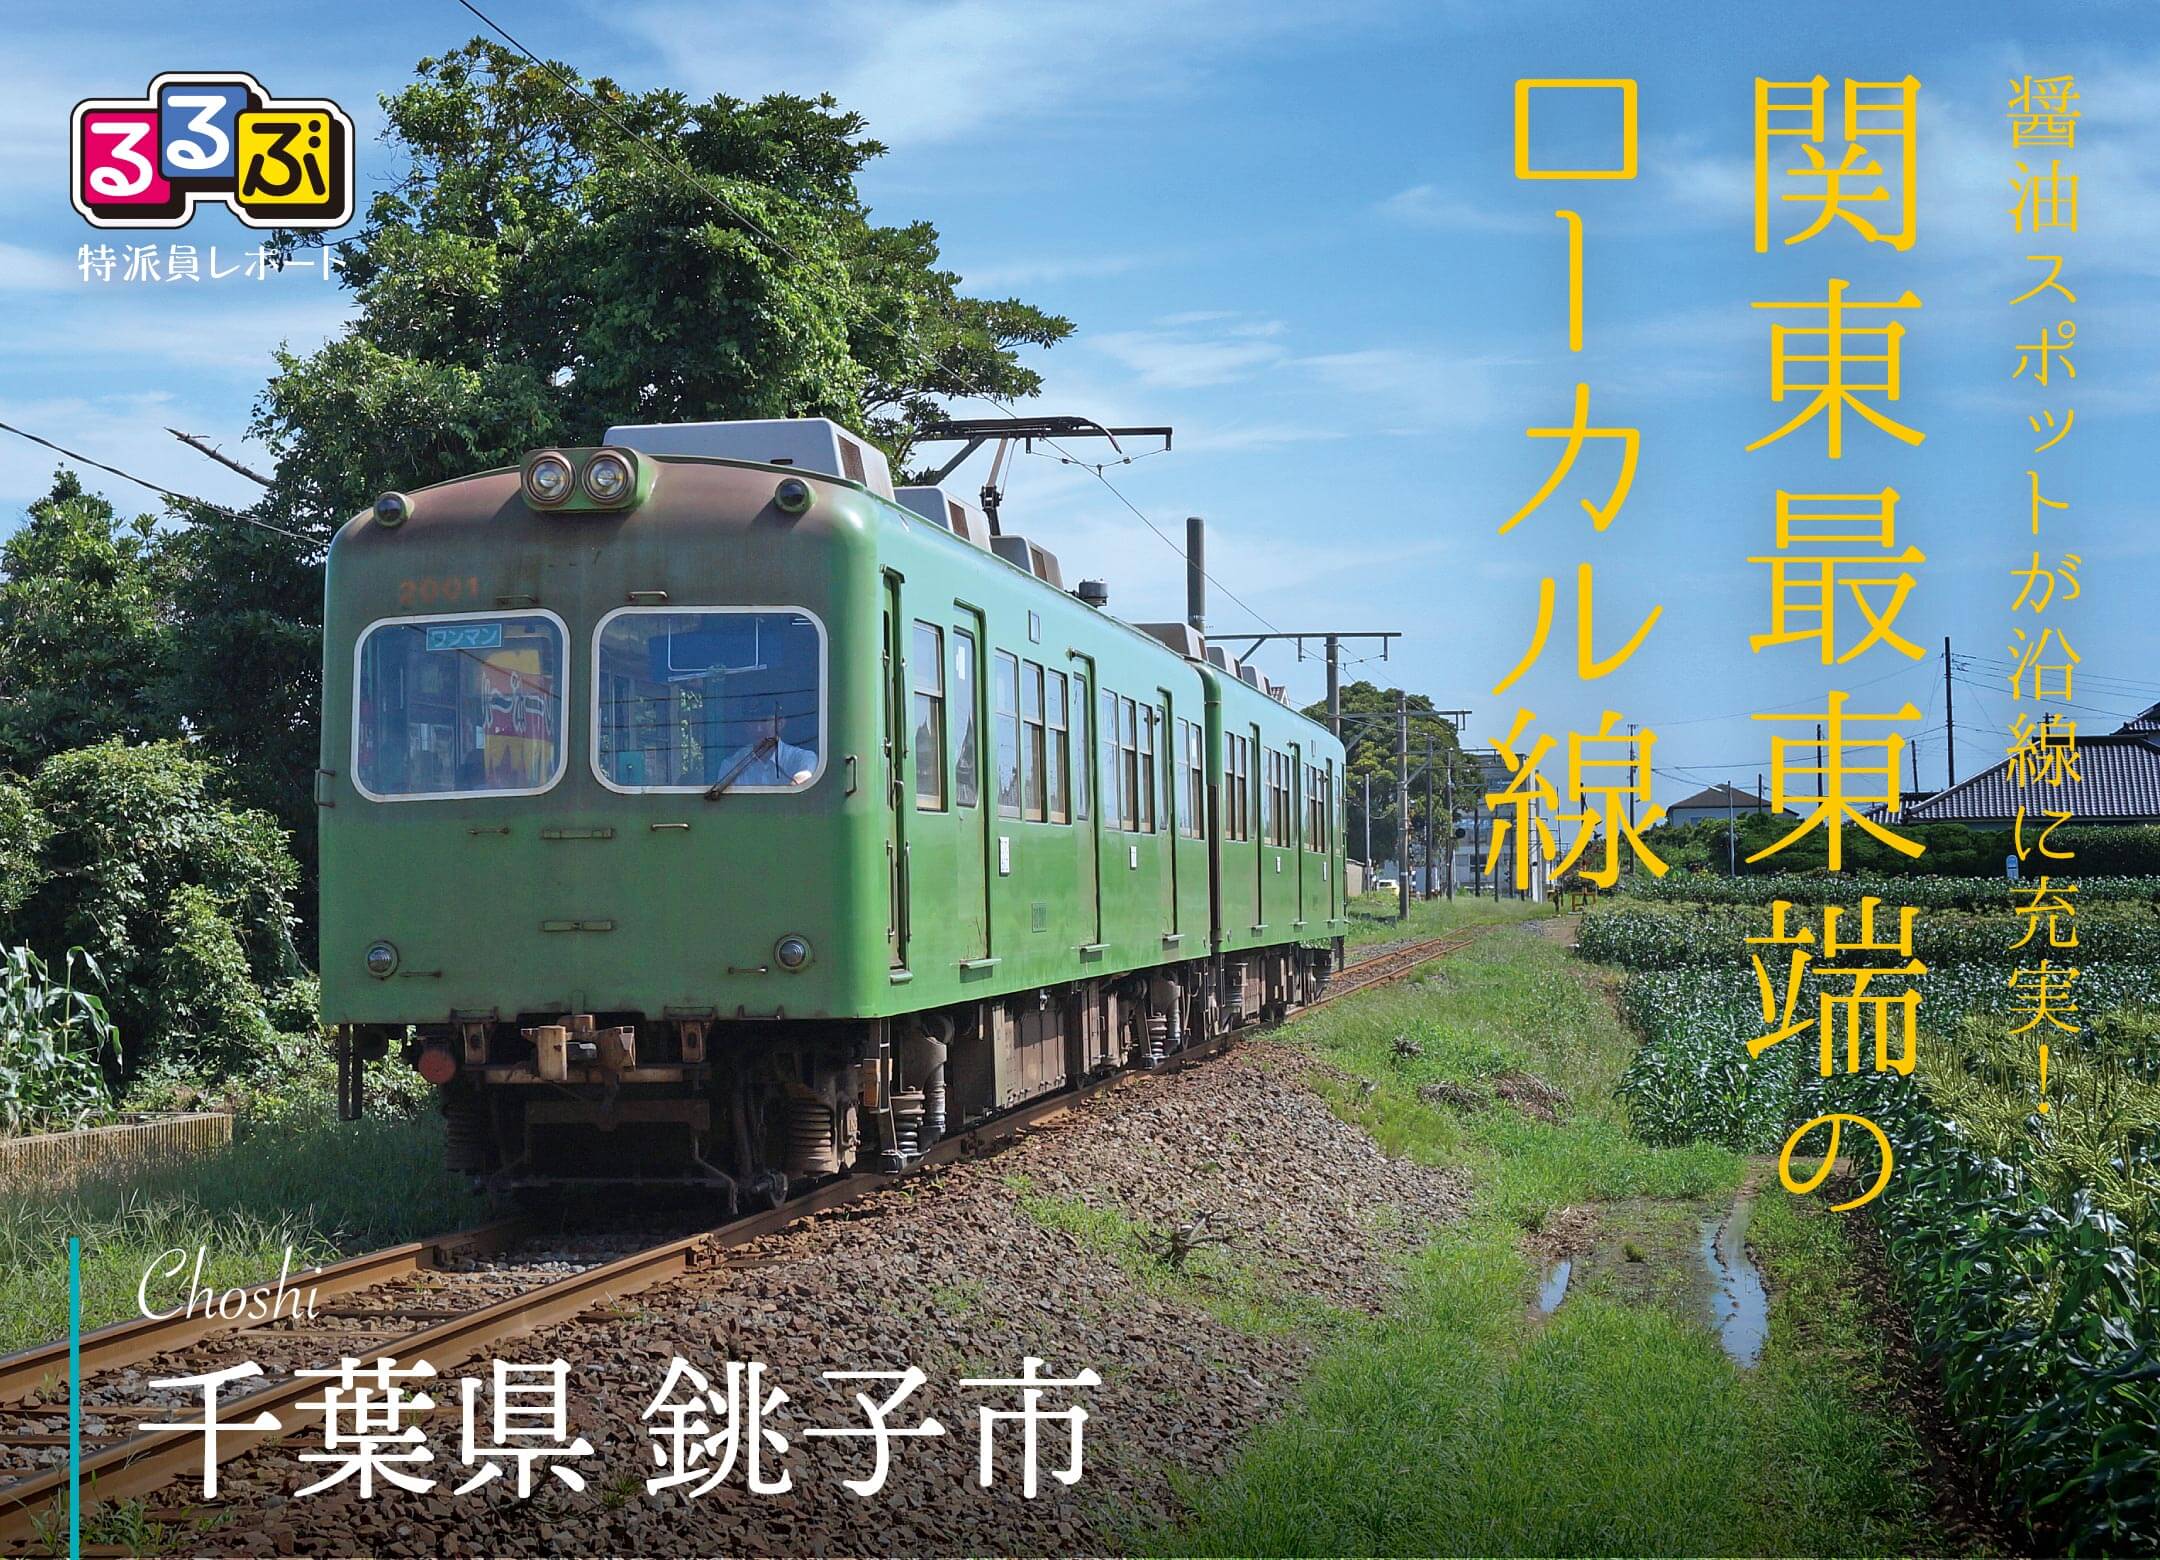 関東最東端のローカル線 | 千葉県銚子市 の旅行レポート